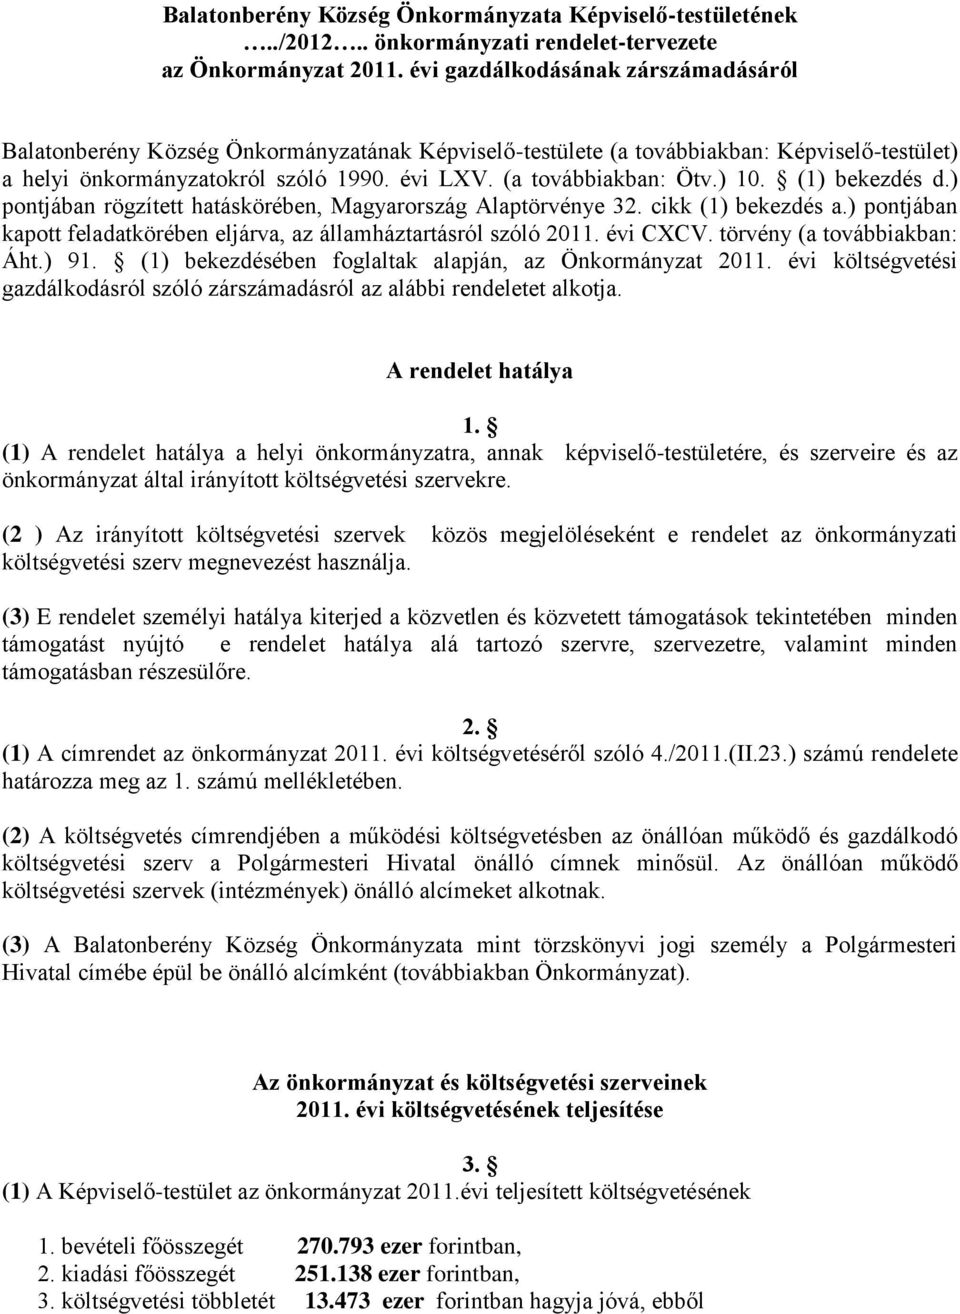 ) 10. (1) bekezdés d.) pontjában rögzített hatáskörében, Magyarország Alaptörvénye 32. cikk (1) bekezdés a.) pontjában kapott feladatkörében eljárva, az államháztartásról szóló 2011. évi CXCV.